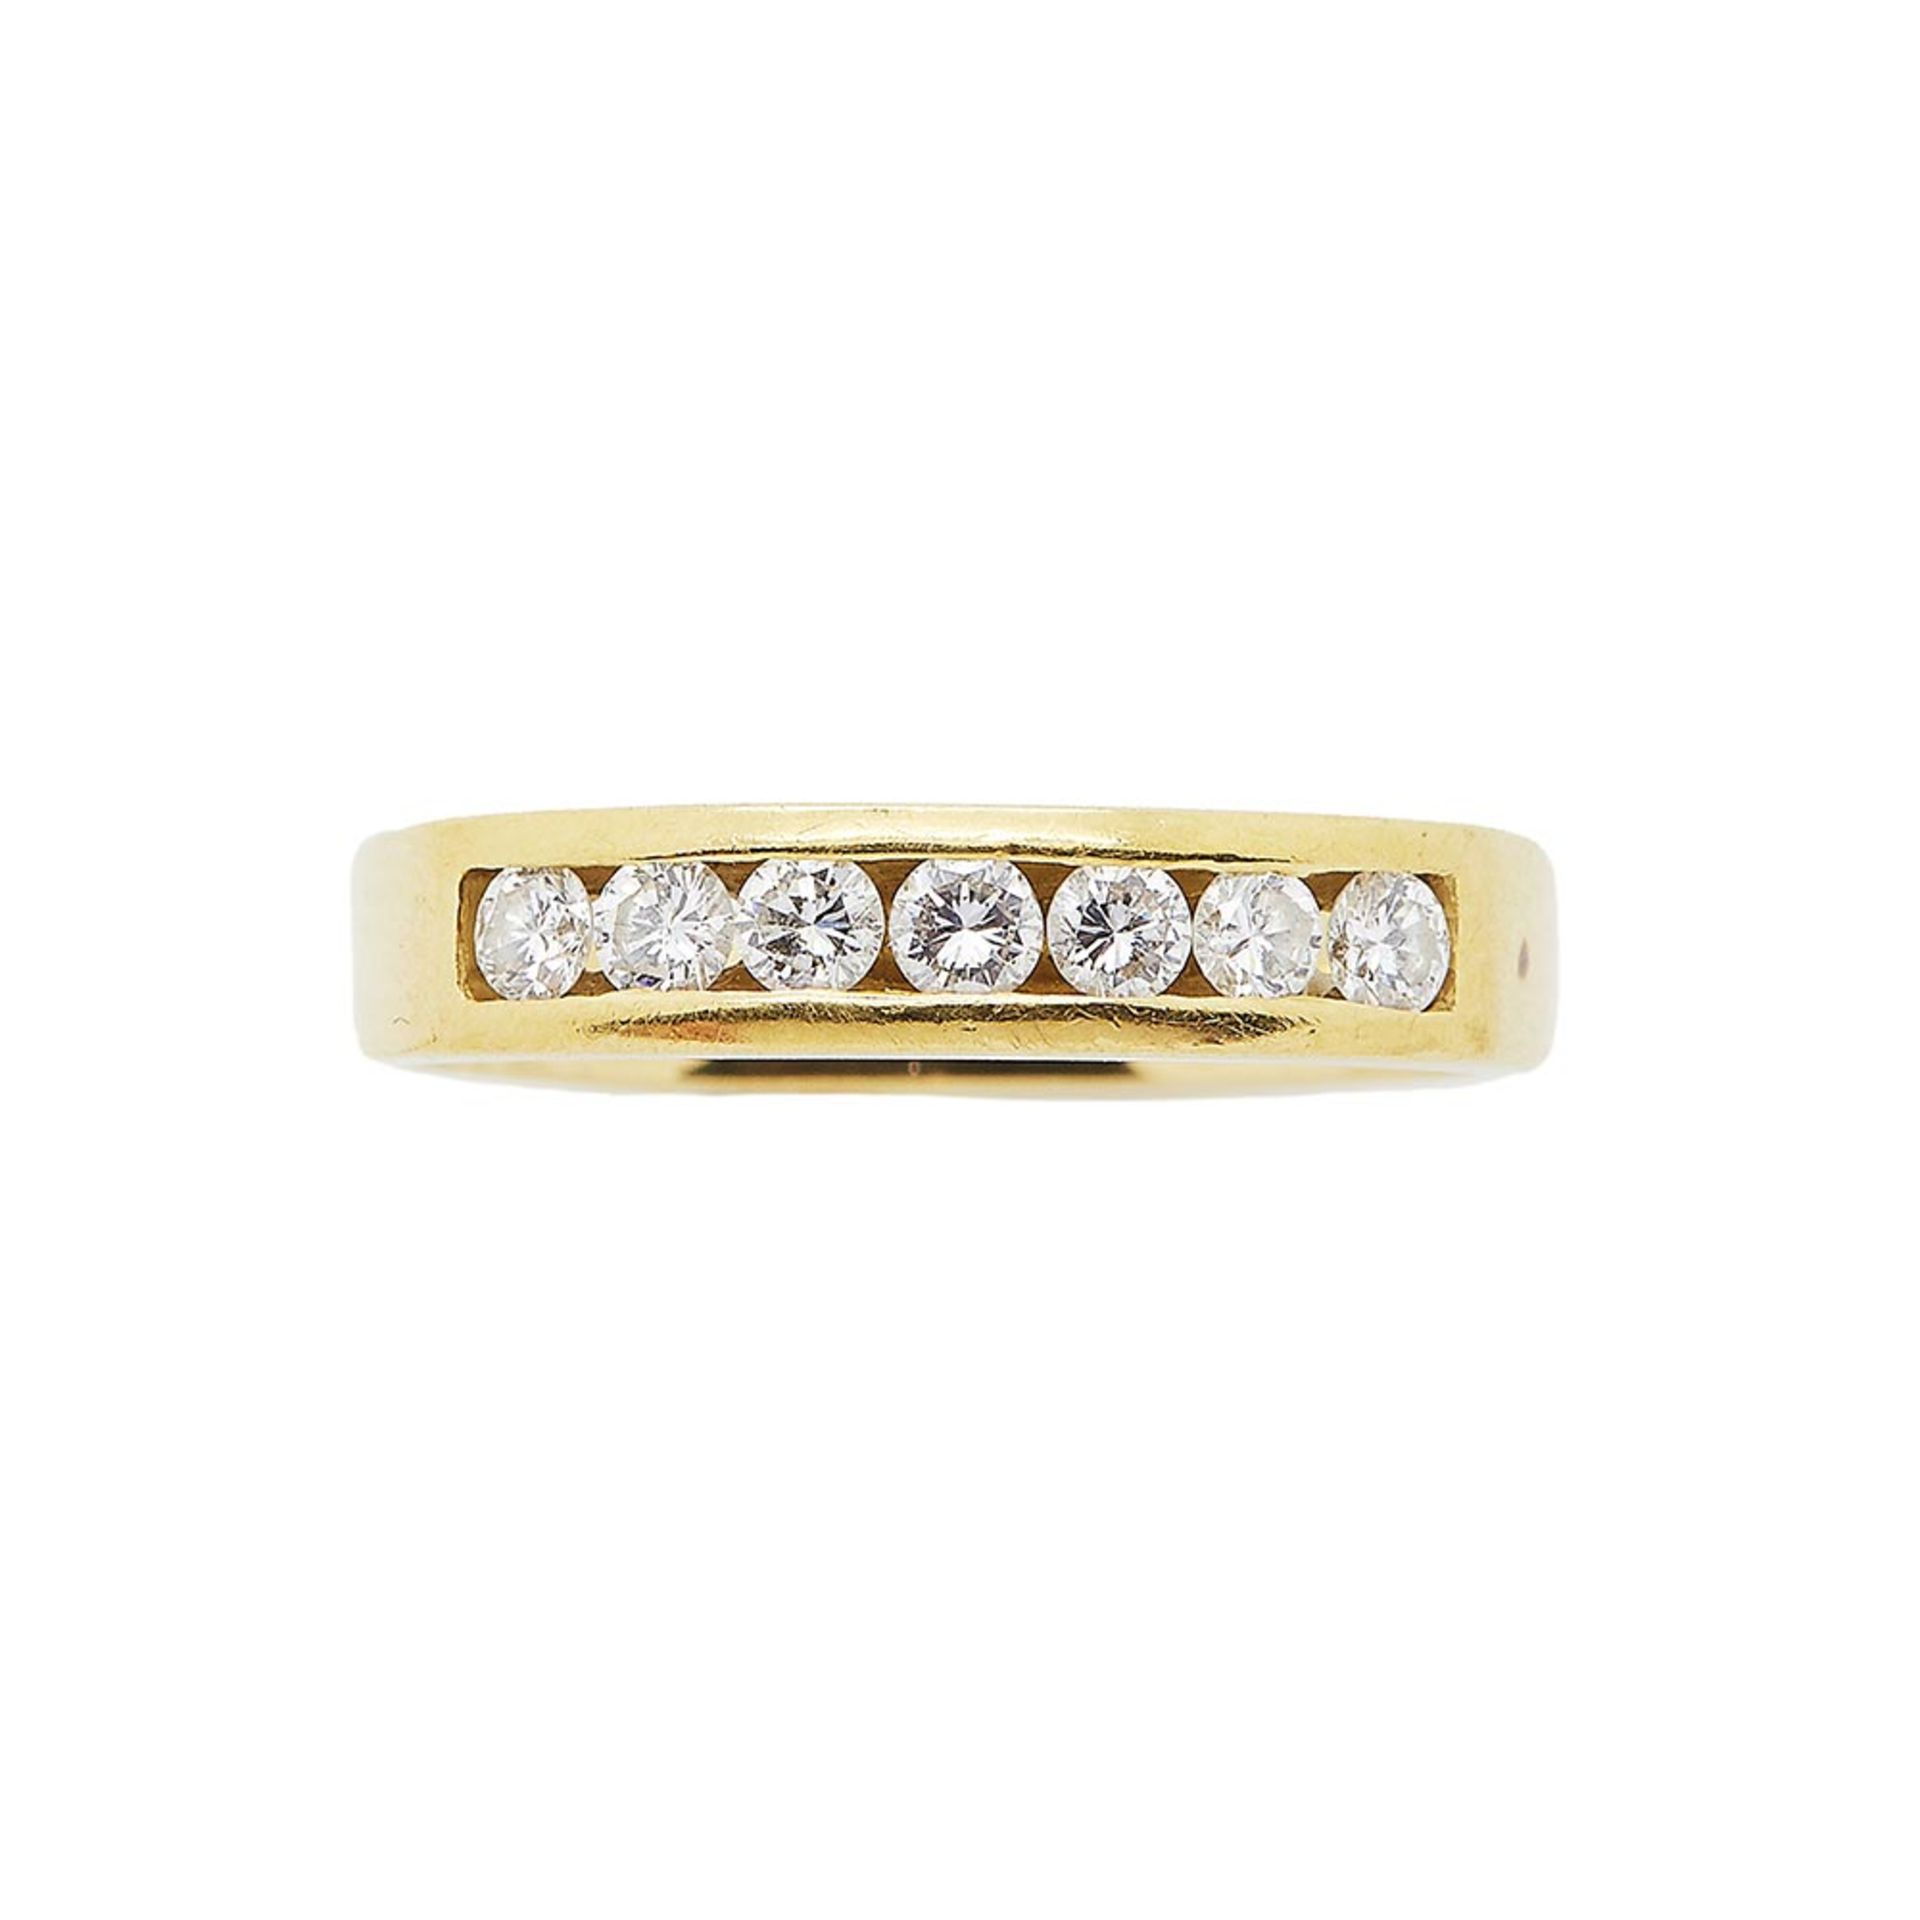 Sortija media alianza en oro con diamantes talla brillante engastados en barras. Peso diamantes: 0,